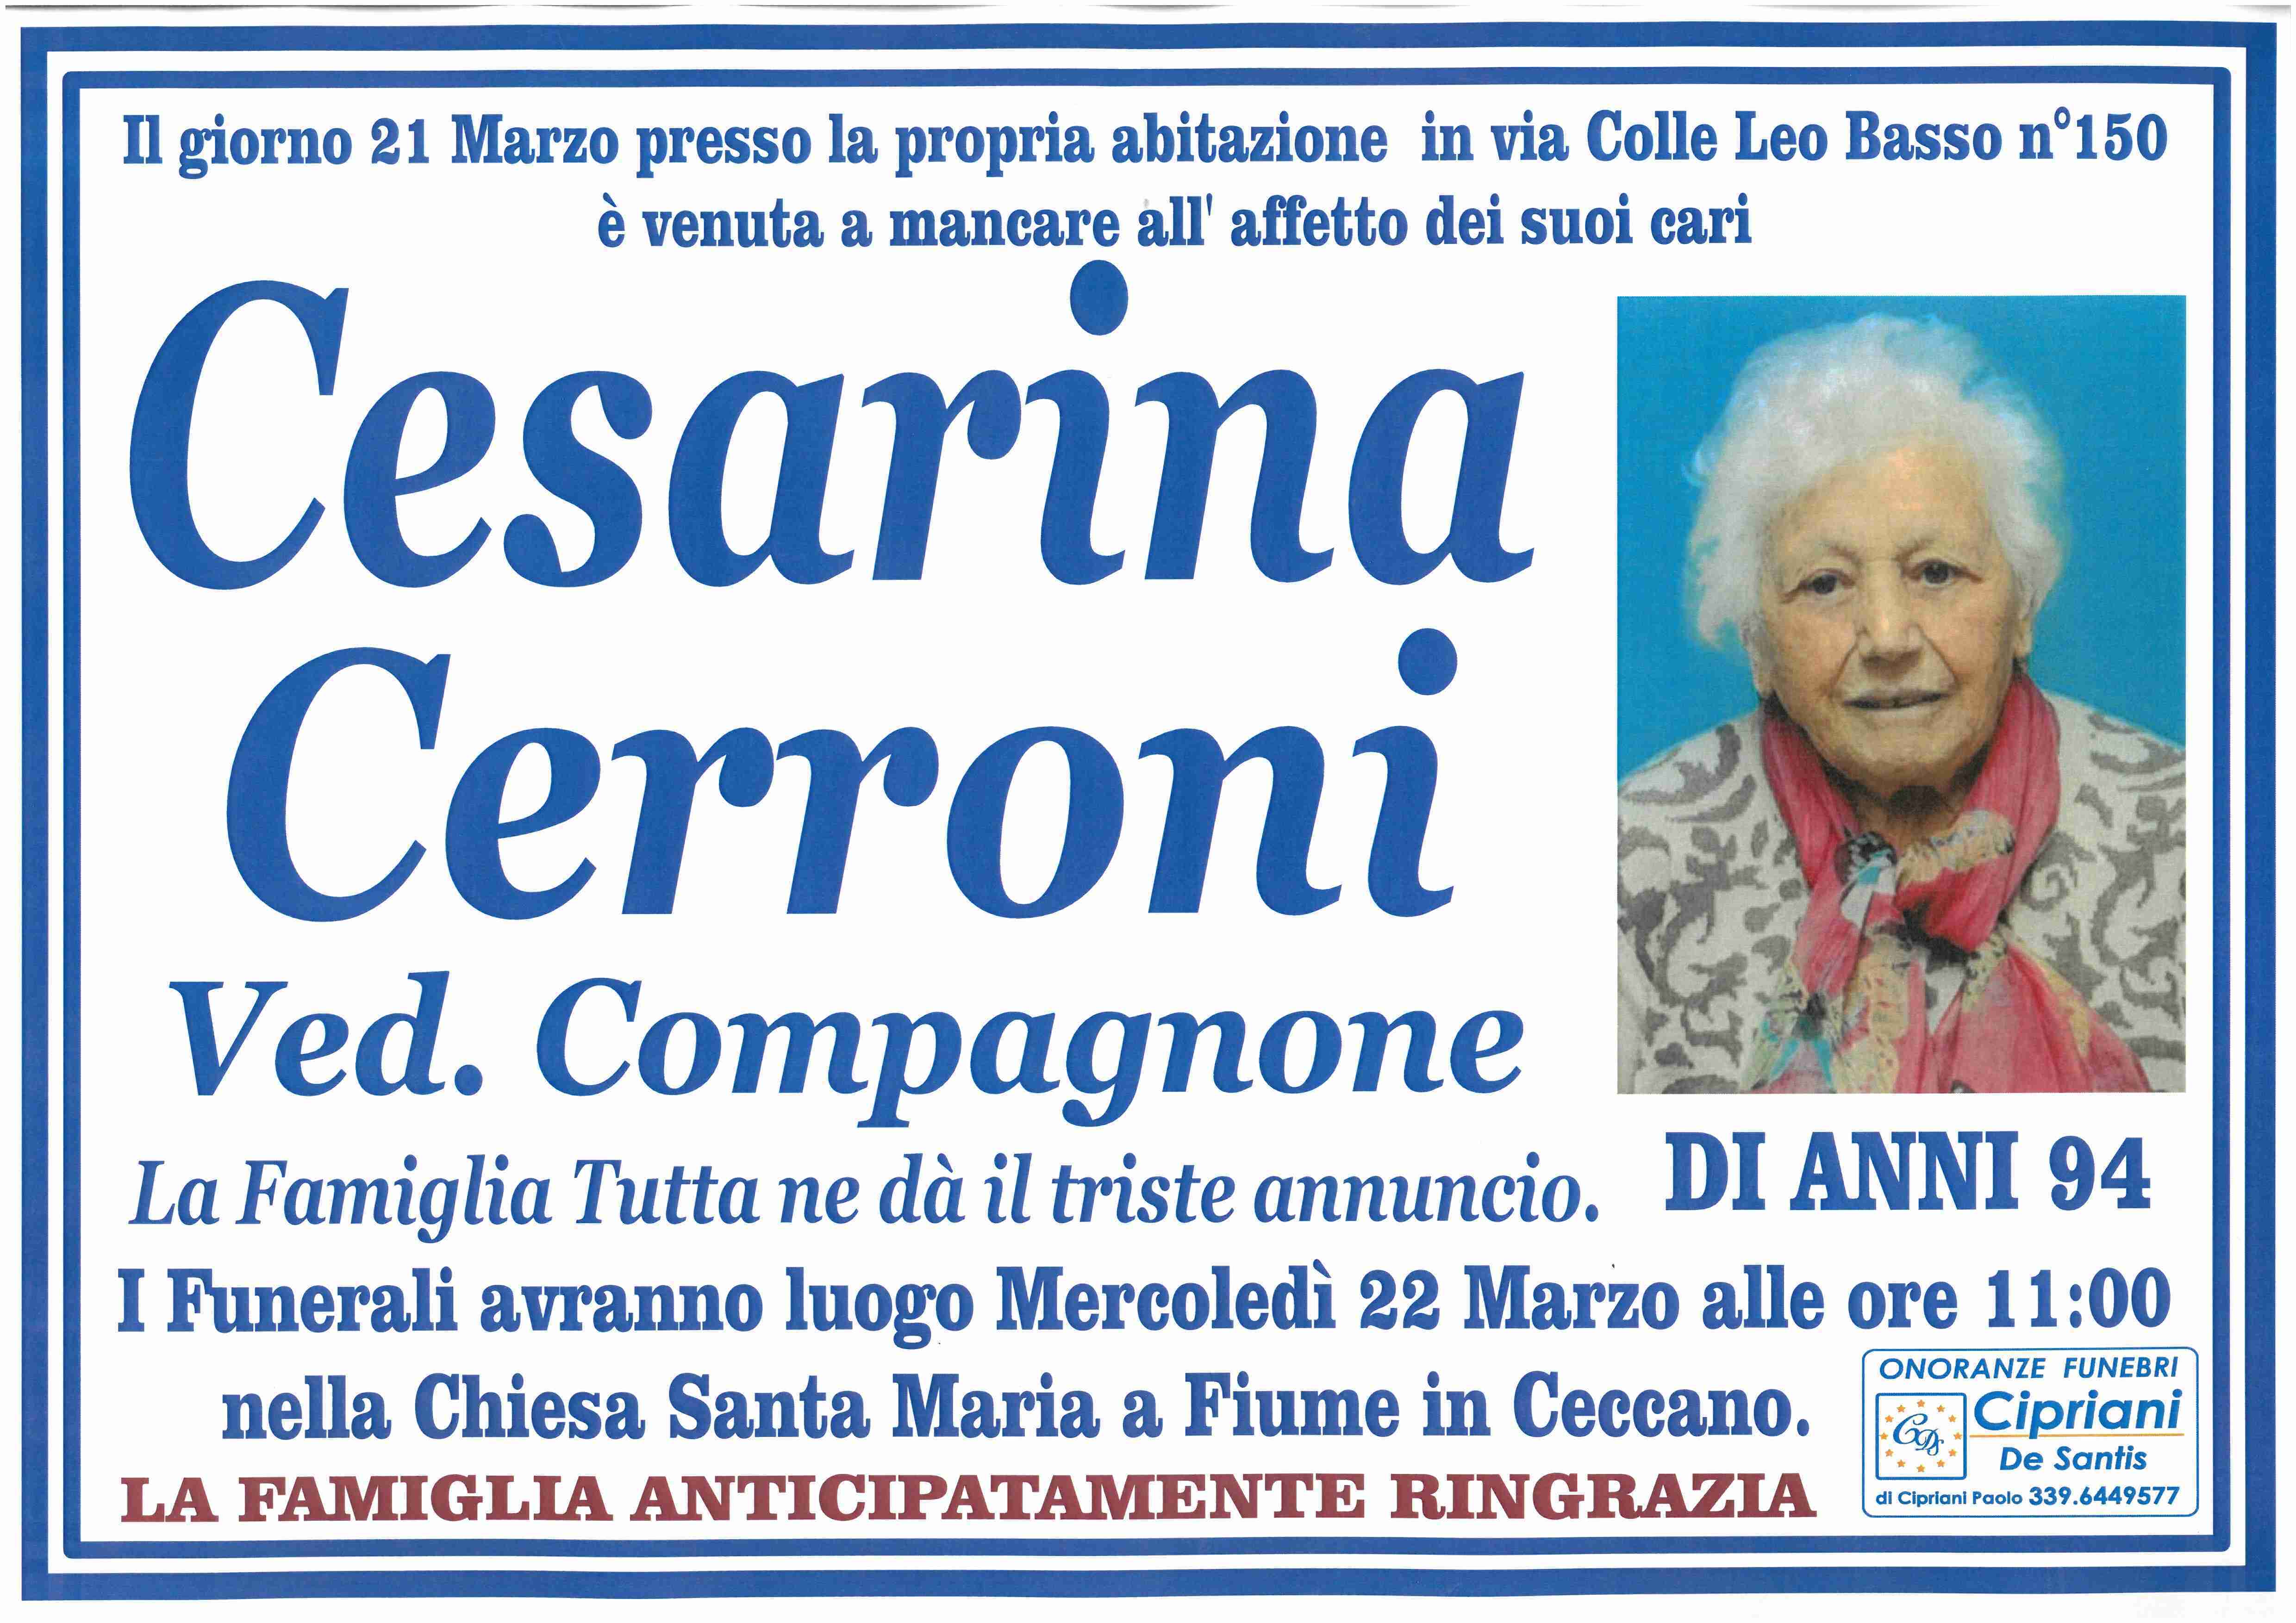 Cesarina Cerroni